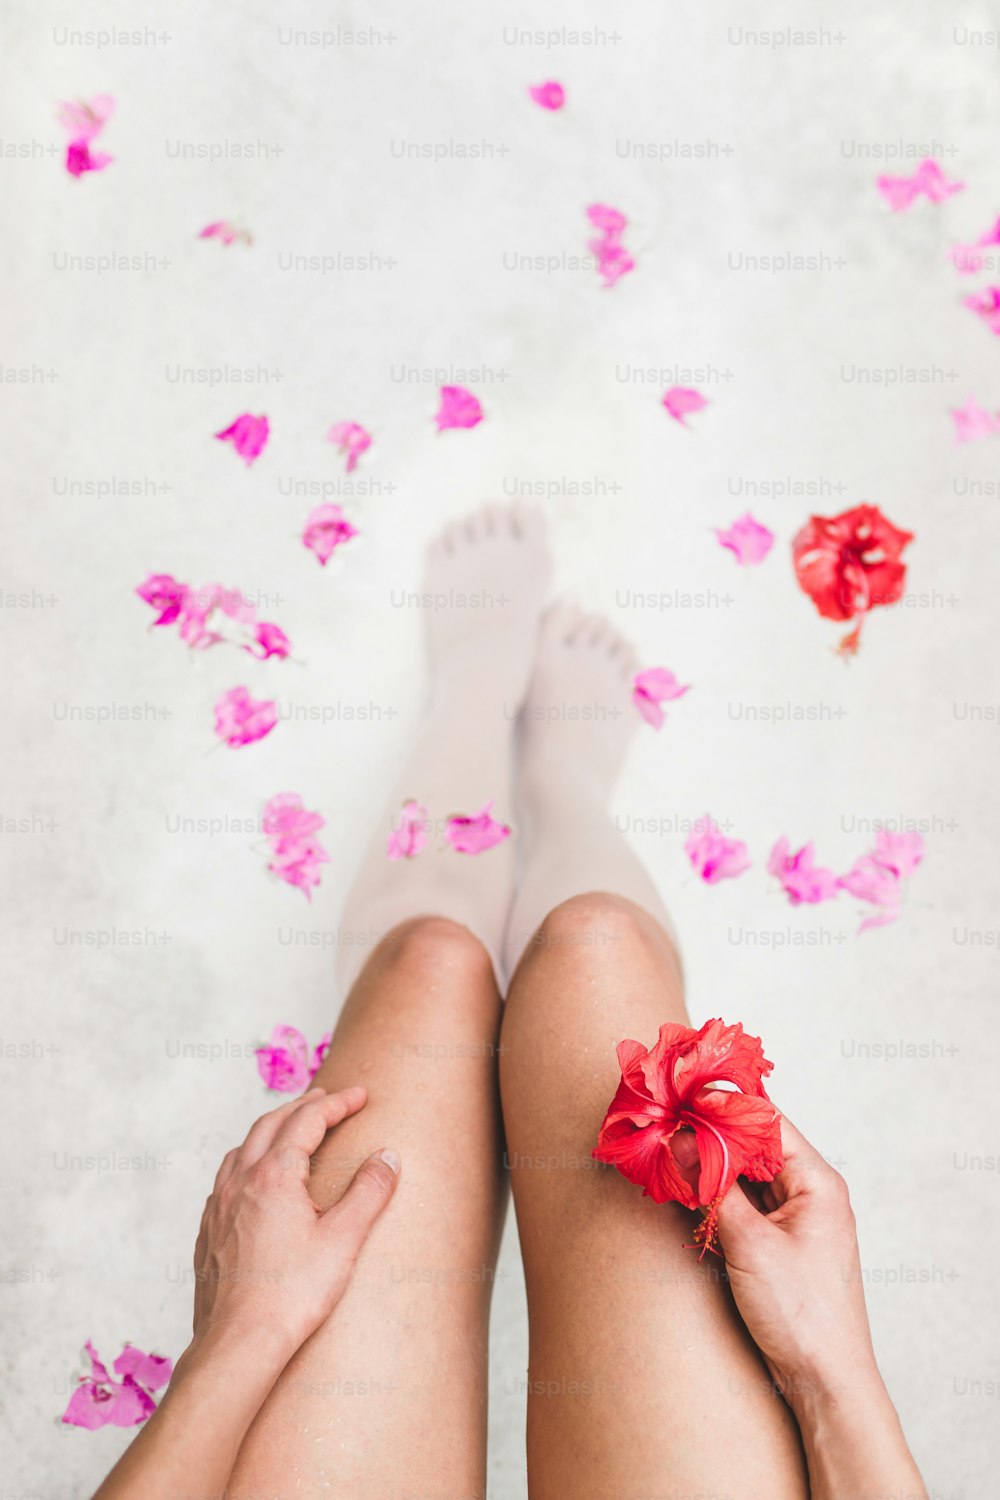 Femme se relaxant dans un bain extérieur rond avec des fleurs tropicales, soins de la peau bio, hôtel spa de luxe, photo de style de vie